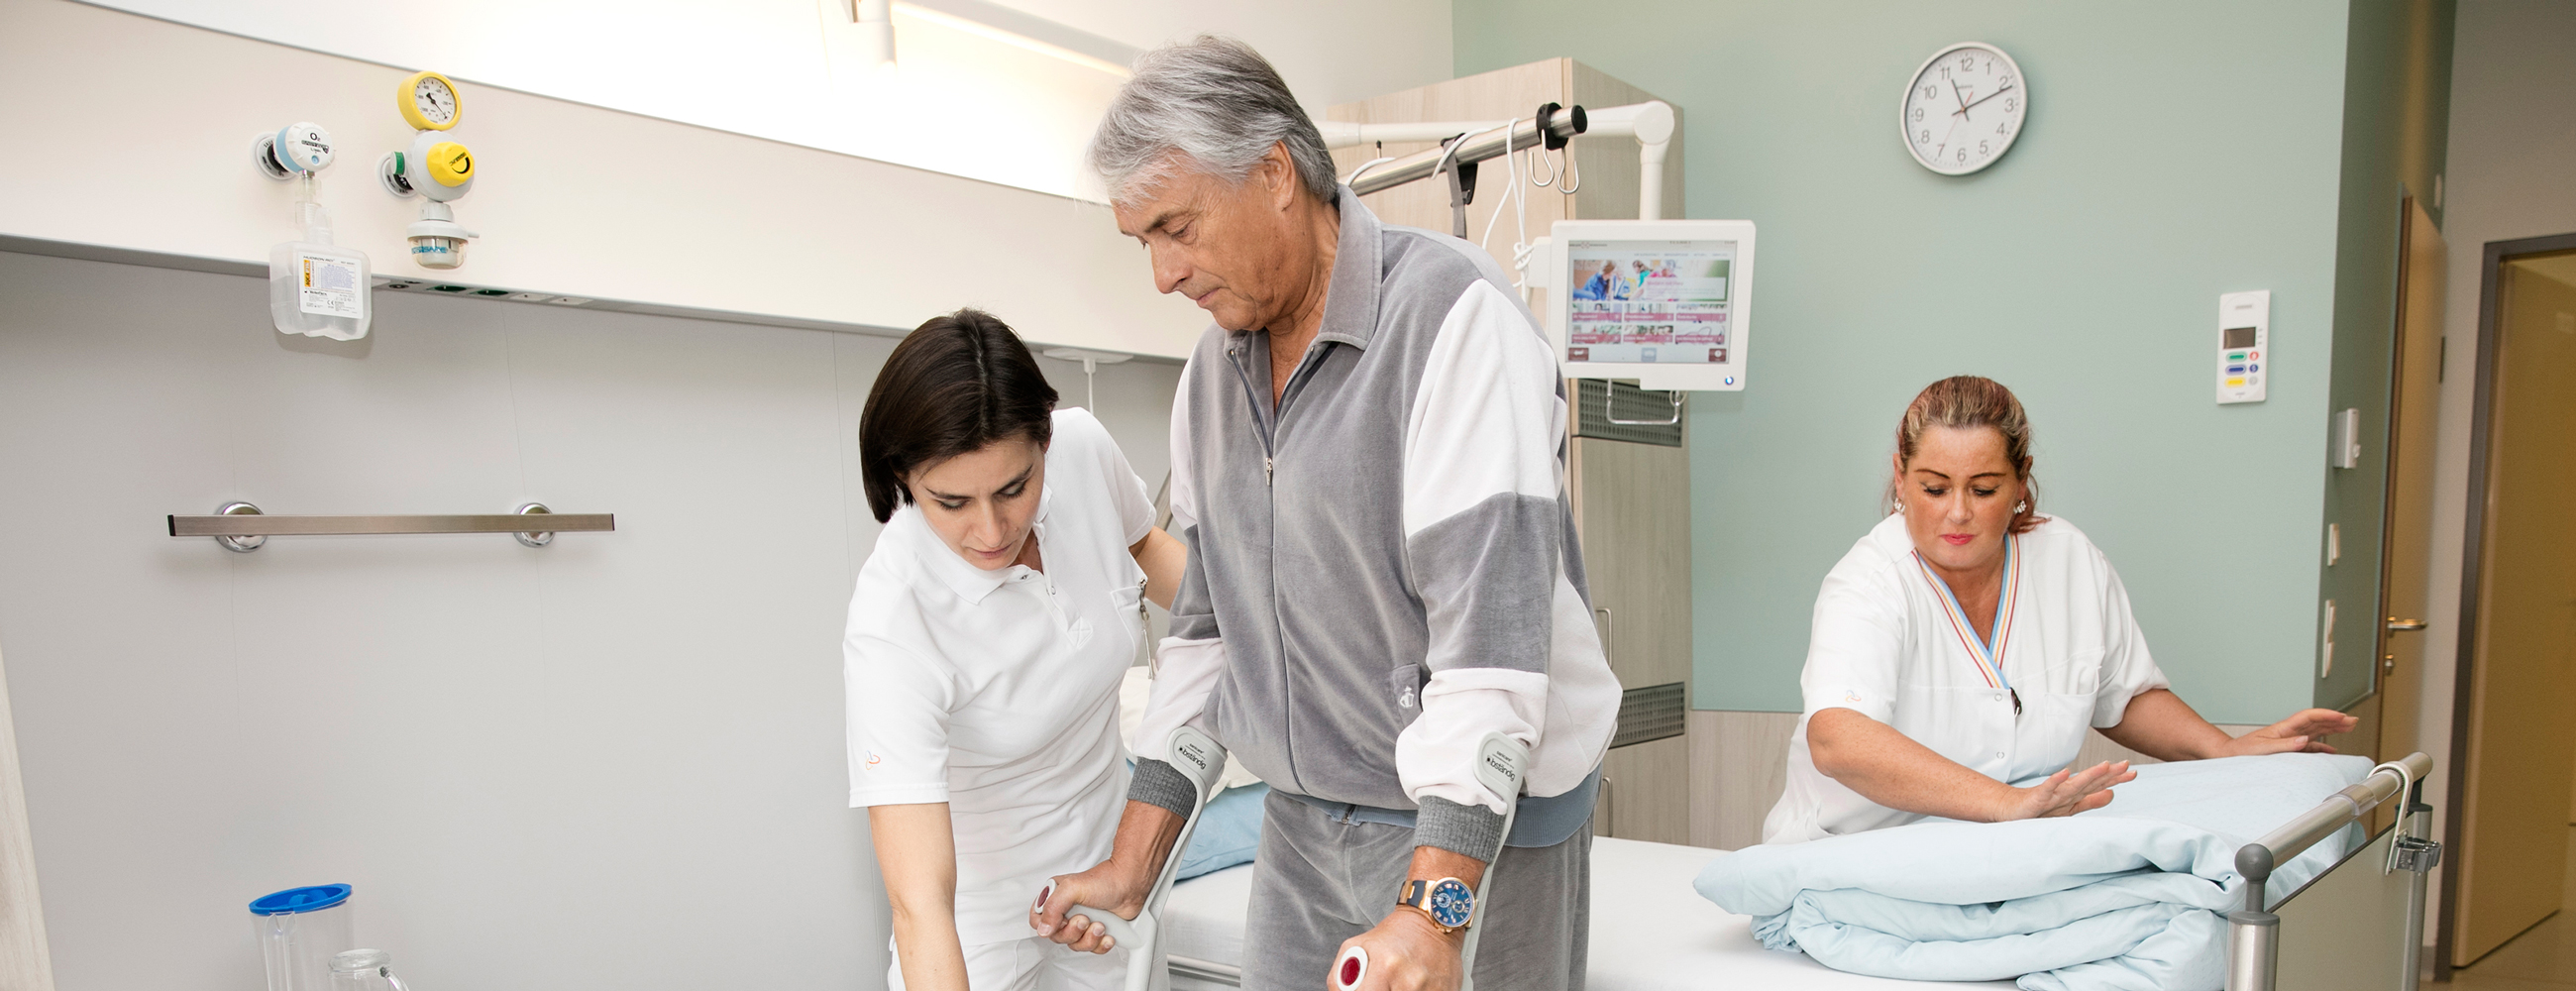 Physiotherapeutin hilft Patient mit Krücken gehen, im Hintergrund macht Pflegerin das Krankenbett